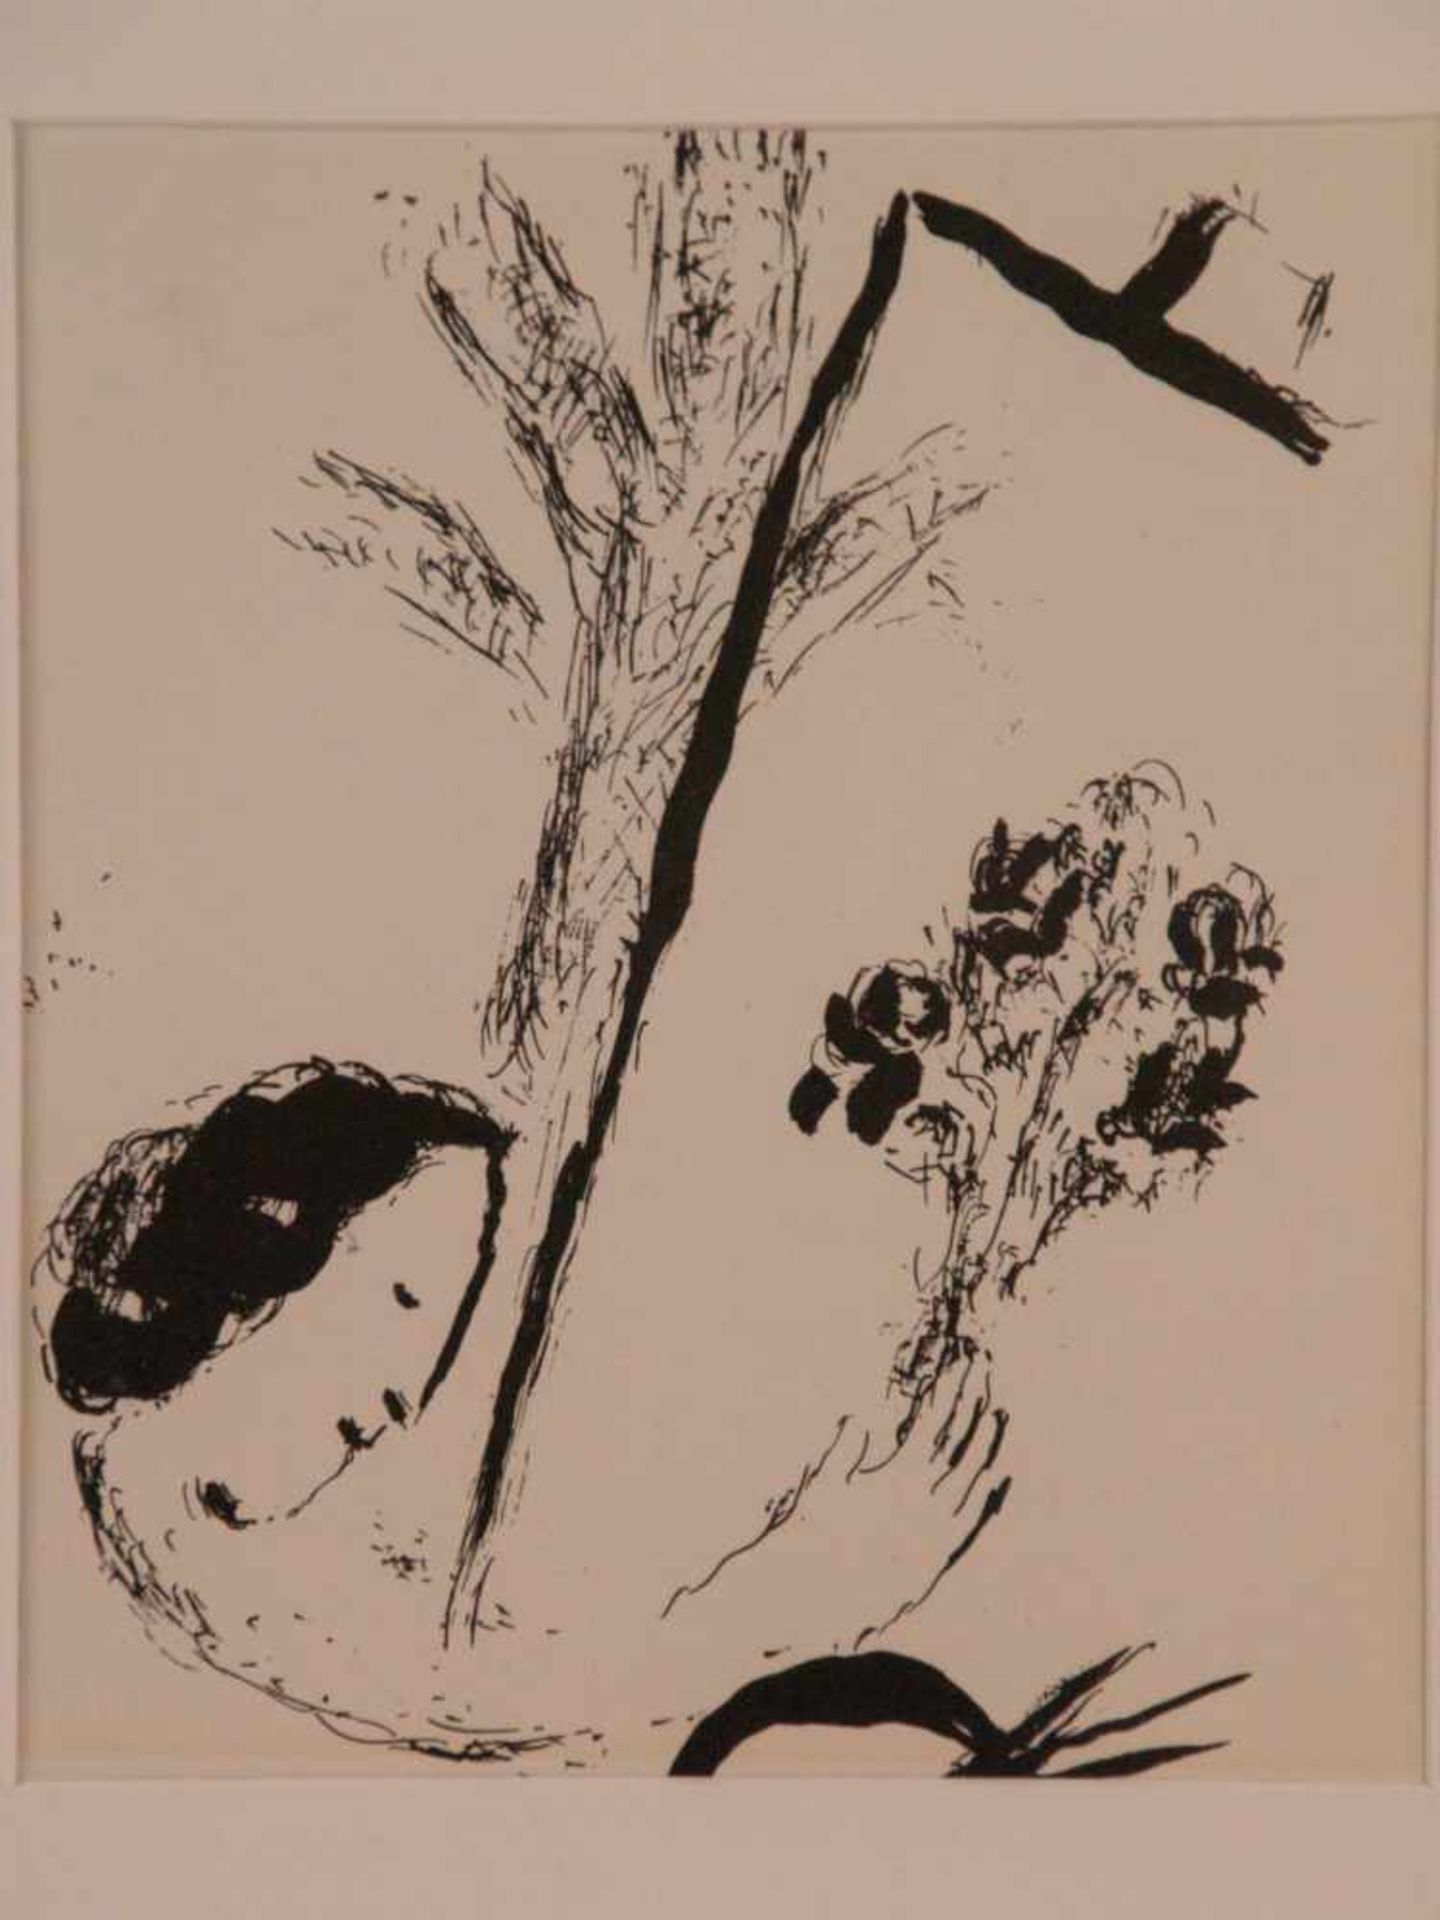 Chagall, Marc (1887 Witebsk - 1985 Saint-Paul-de-Vence) - "Der Handblumenstrauß", 1957, Original-